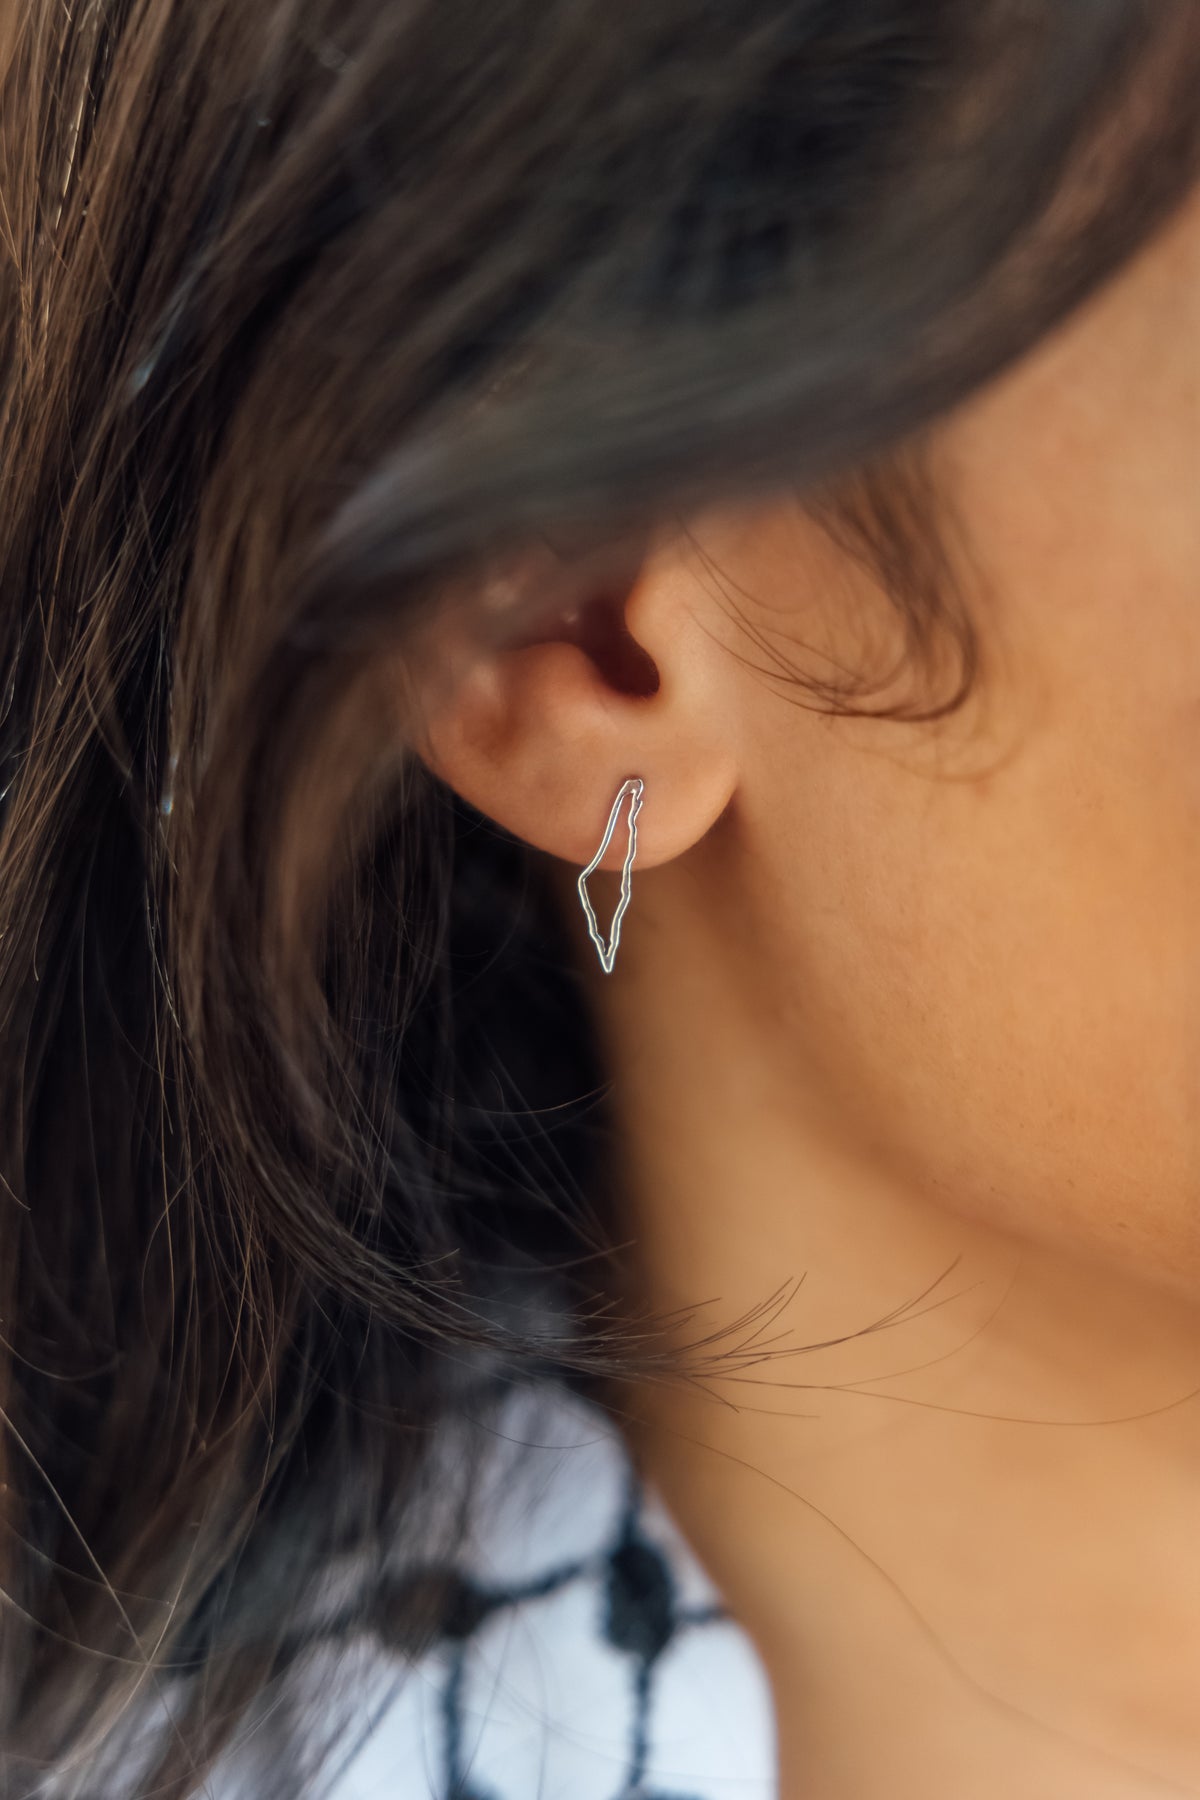 Palestine map frame stud earrings